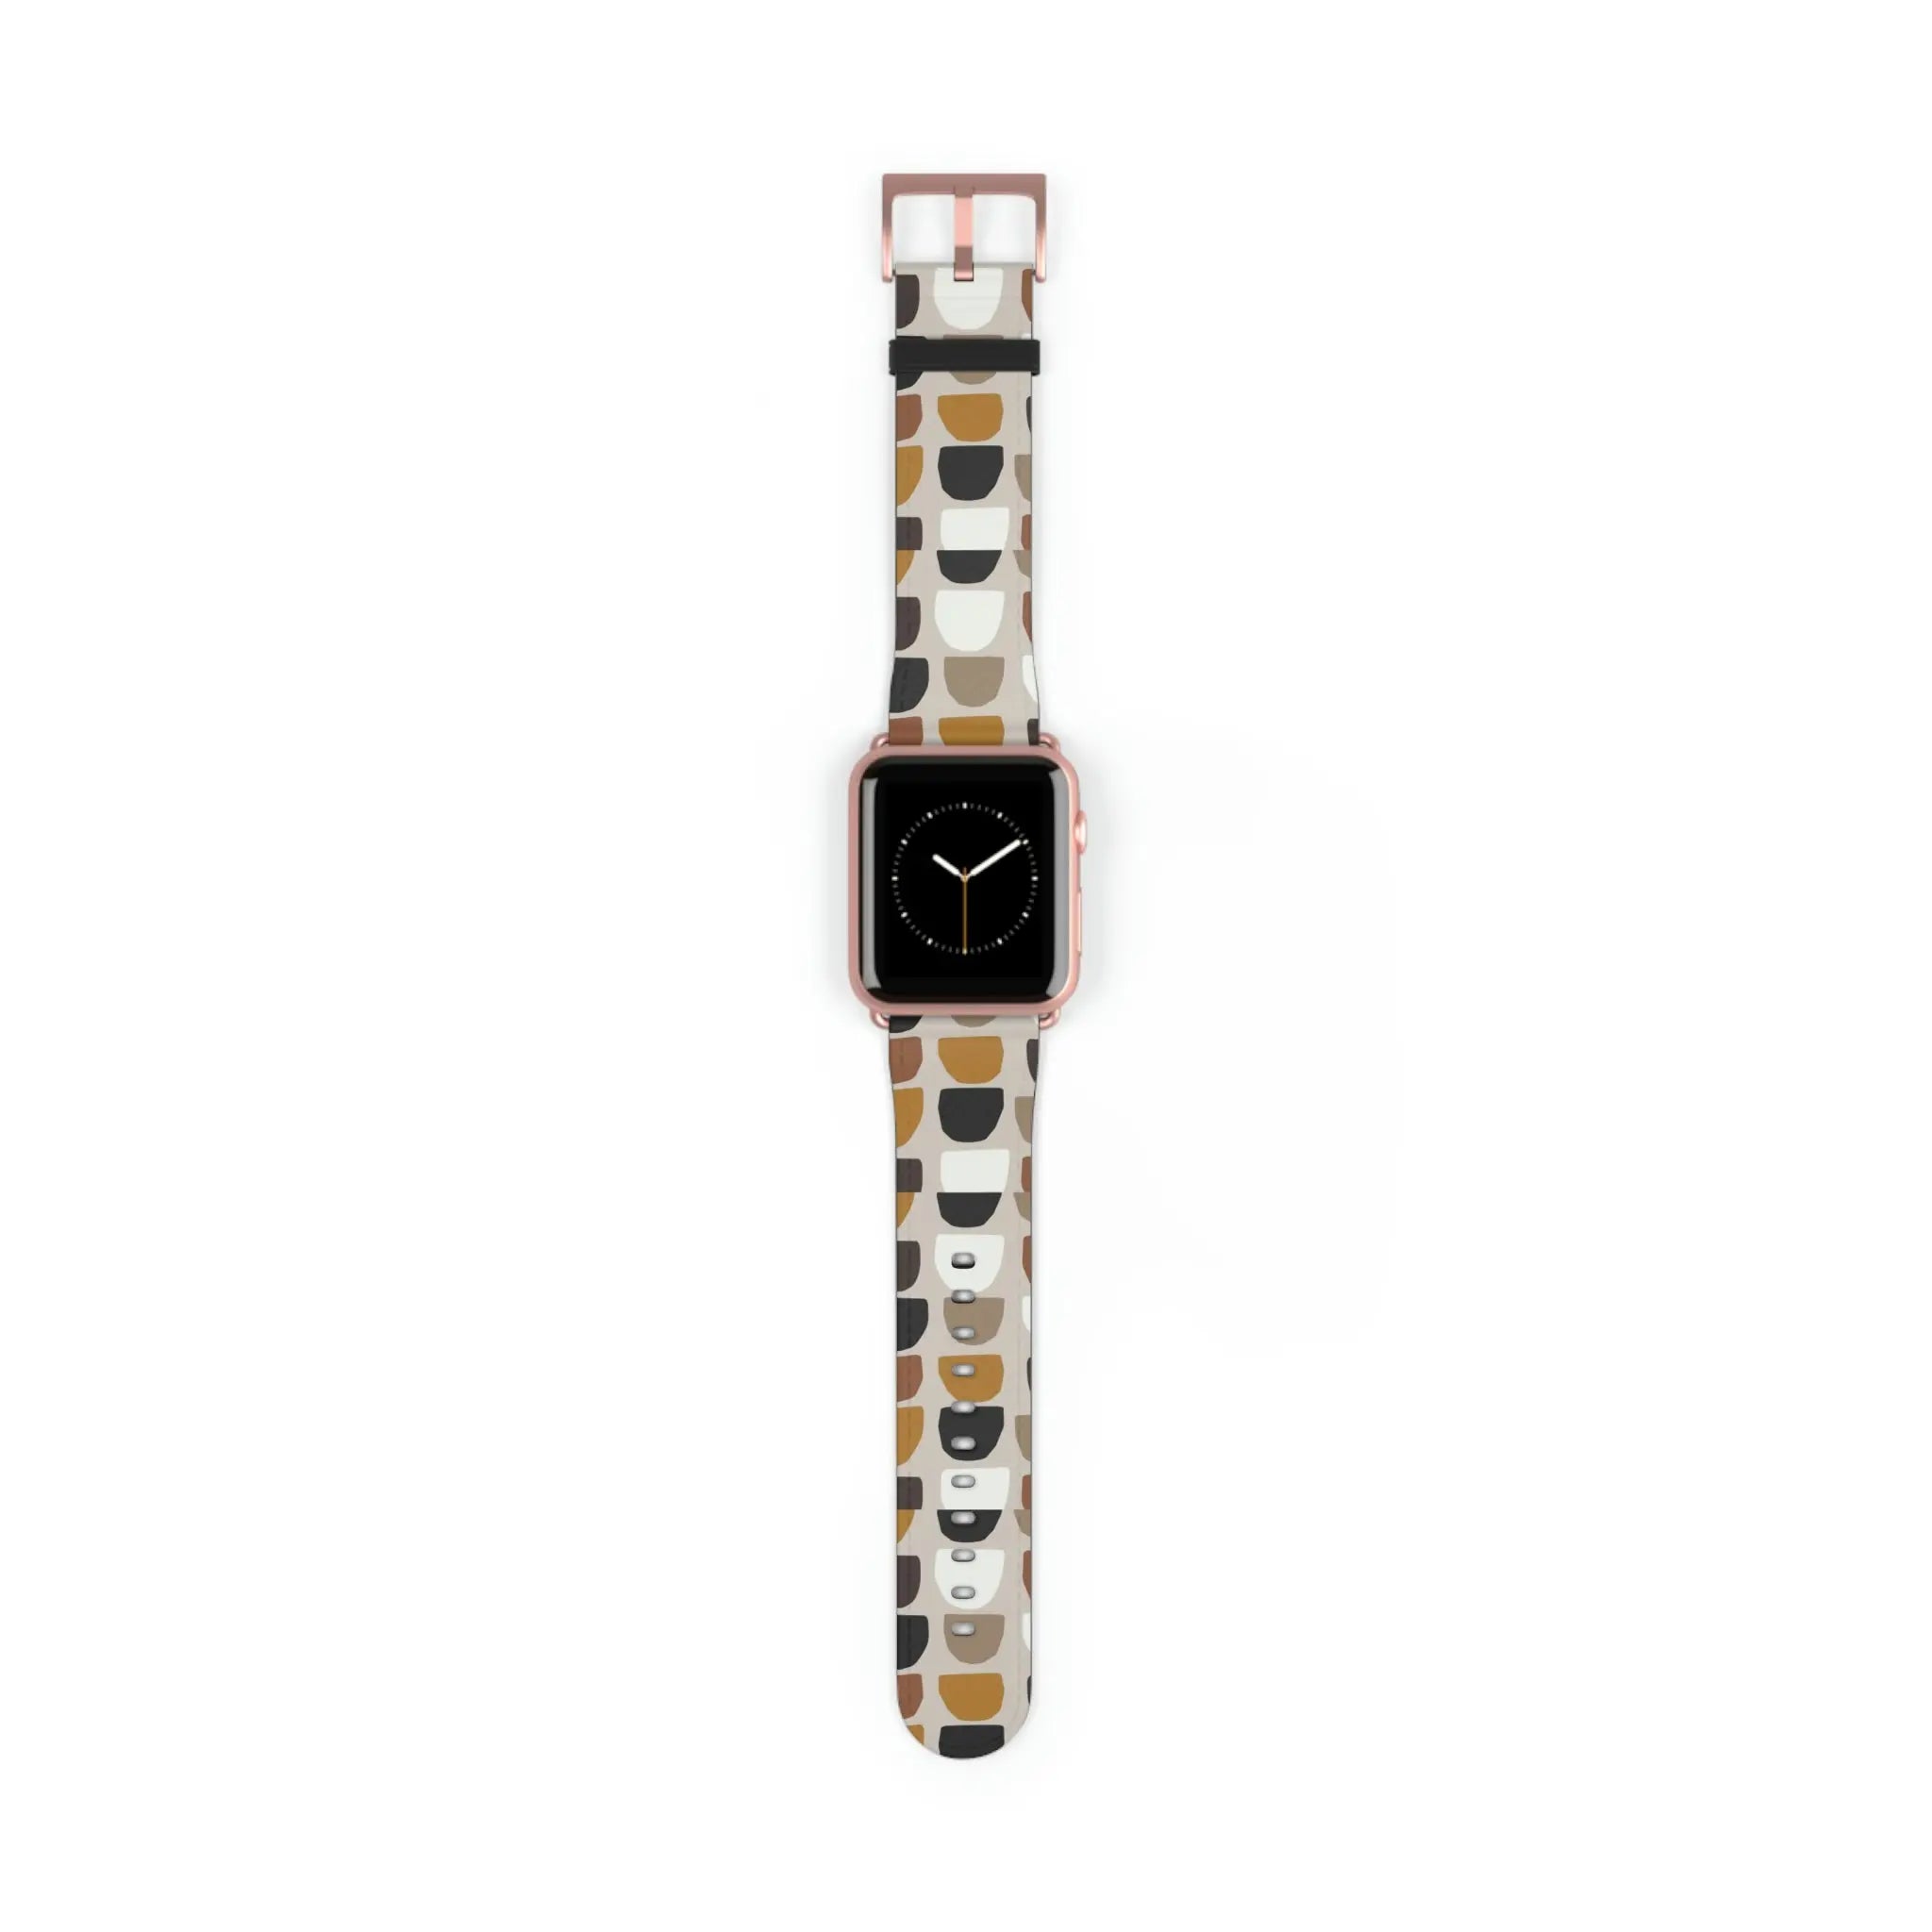  Boho (Khaki) Apple Watch Band Accessories42-45mmRoseGoldMatte